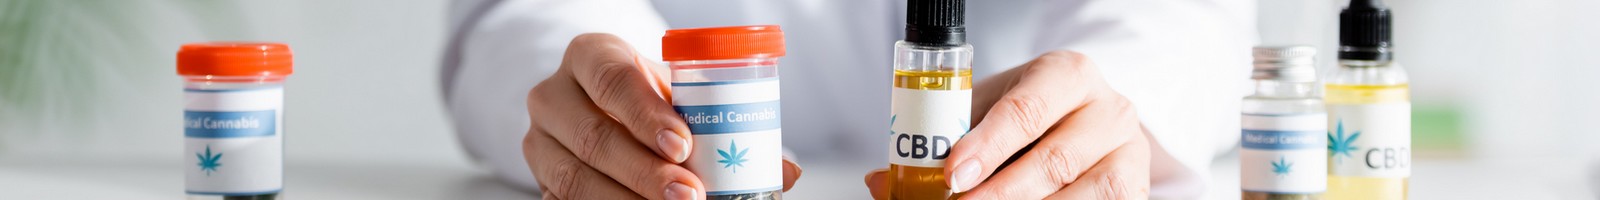 L’avènement du cannabis thérapeutique en France : perspectives et préparatifs pour 2025